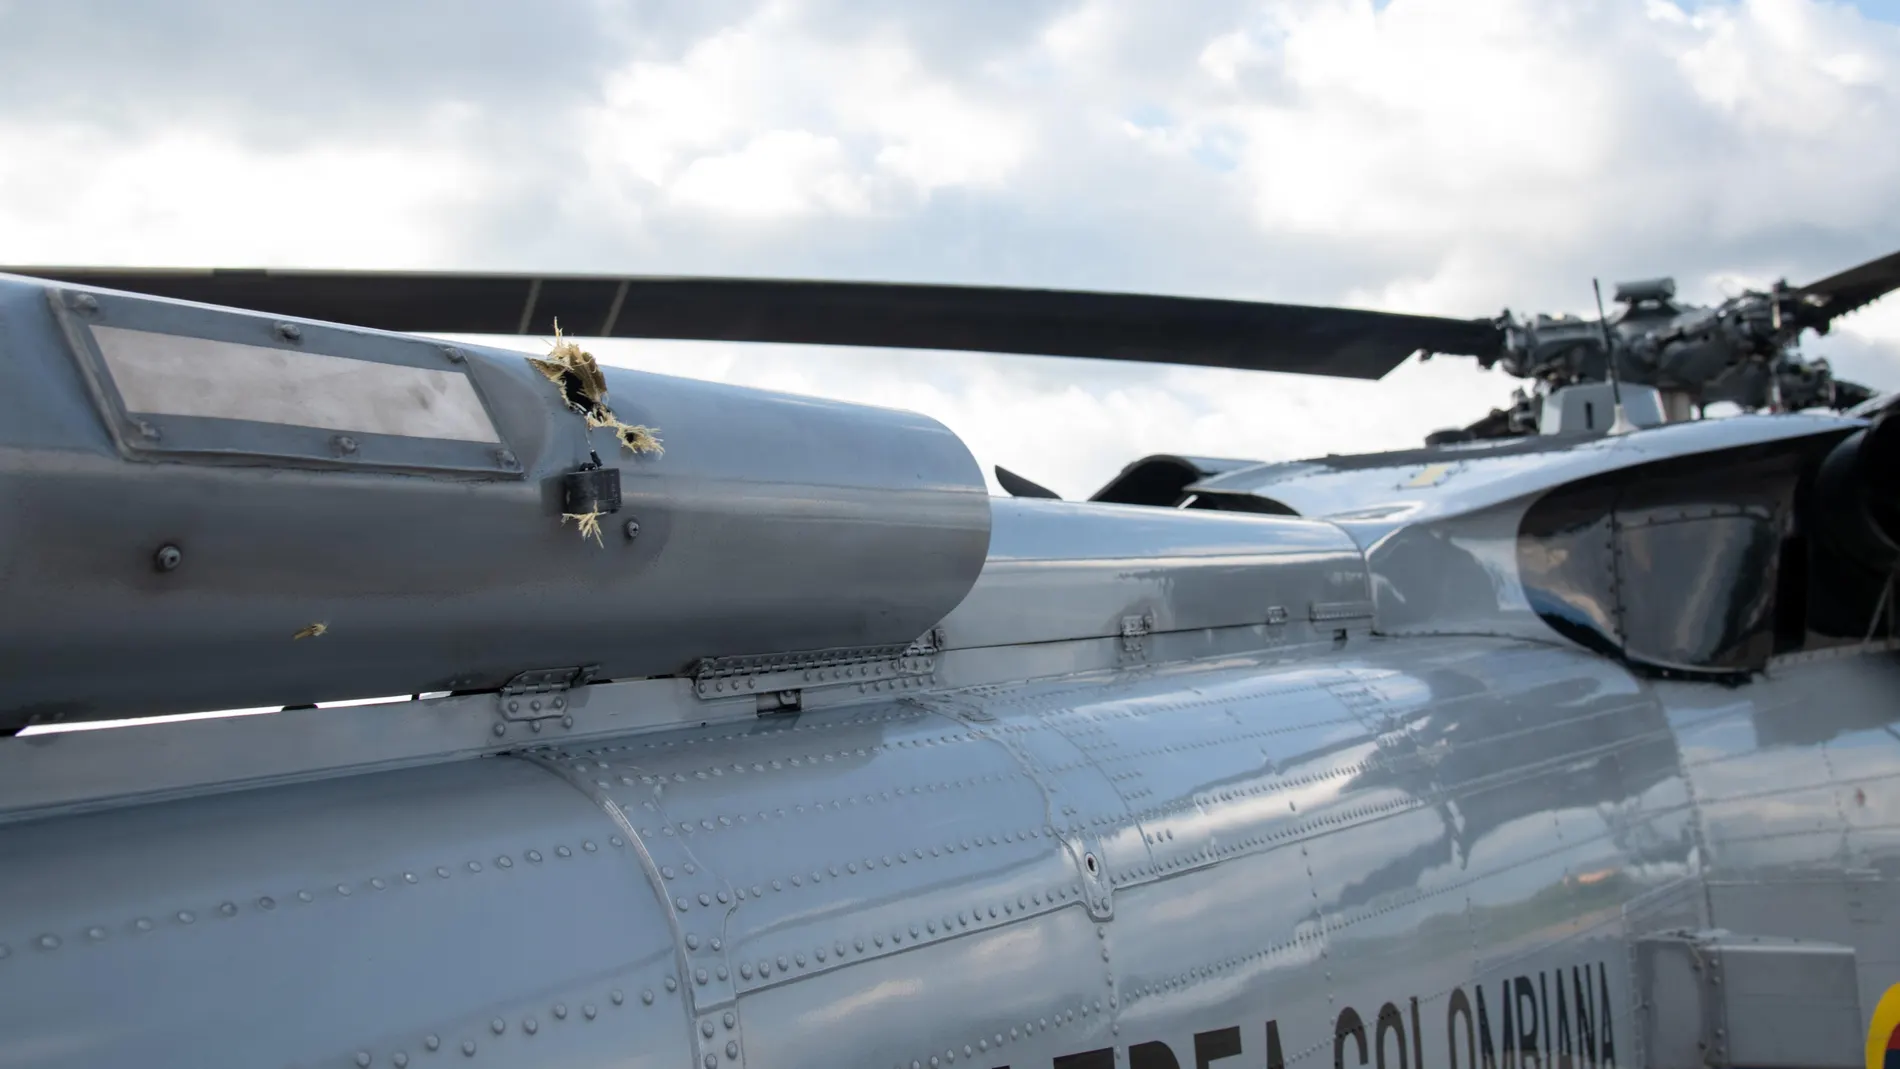 Imagen con los impactos de bala en el helicóptero en el que viajaba el presidente de Colombia, Iván Duque